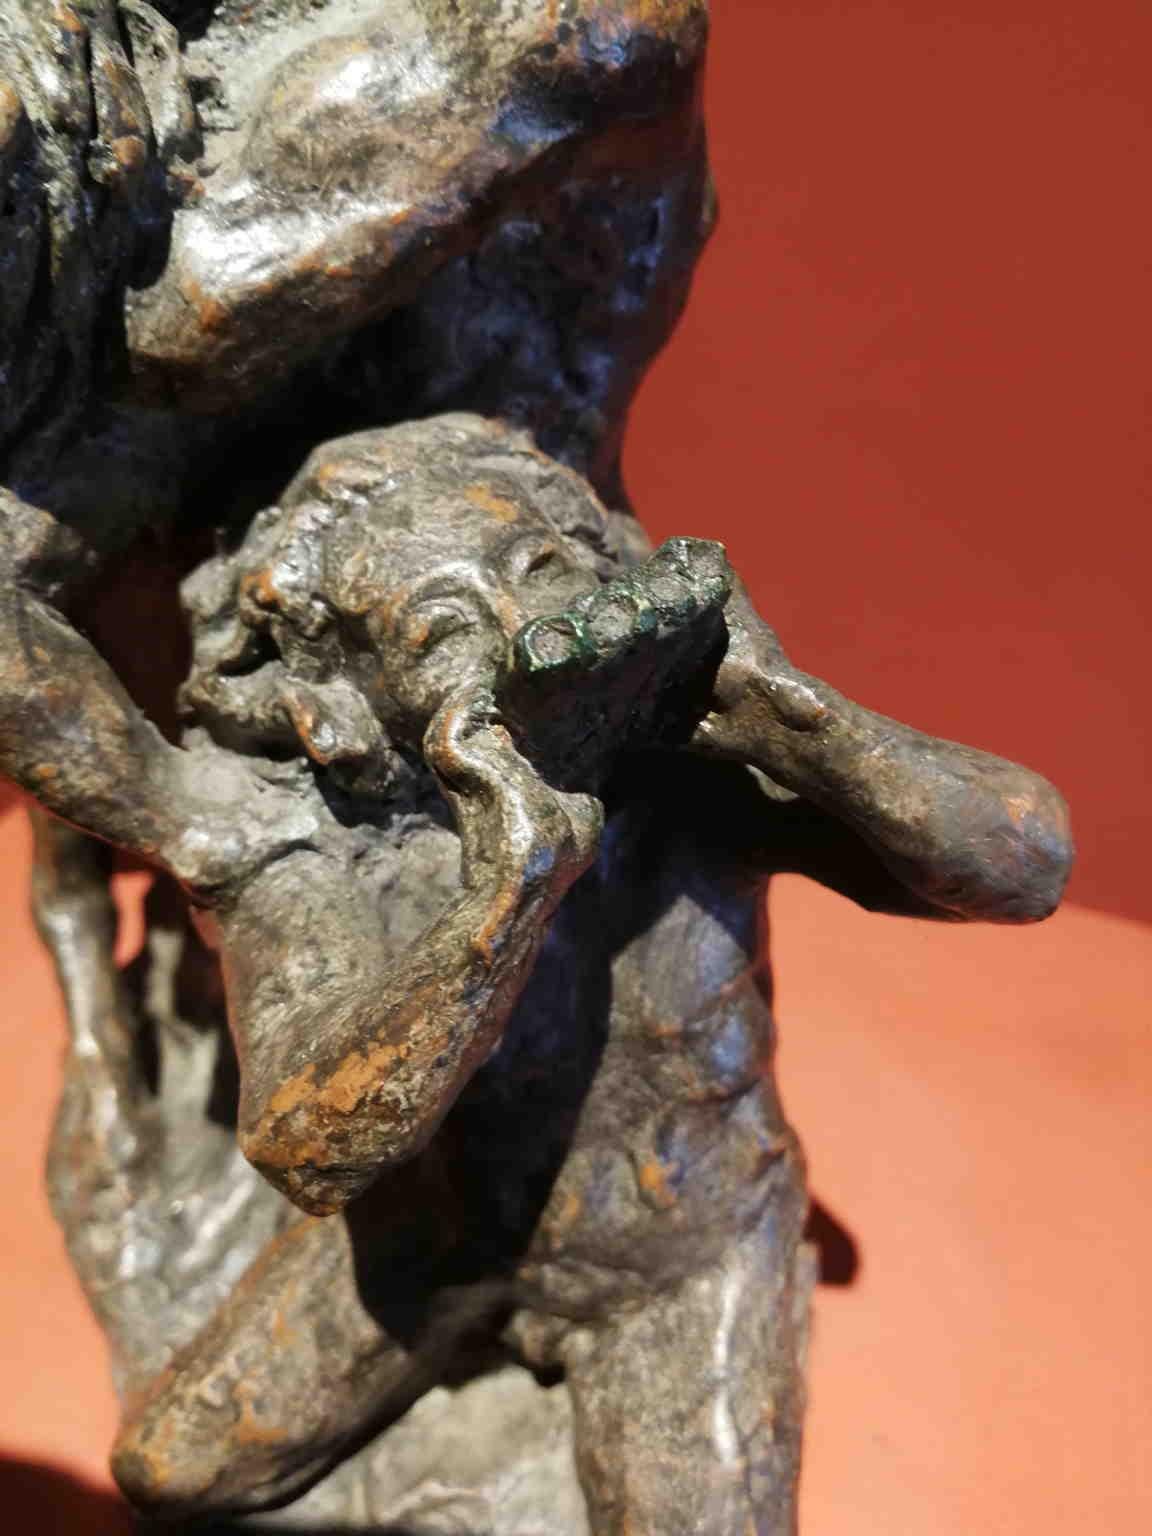 Diese Terrakotta stellt eine mythologische Szene dar, in der ein Zentaur eine Dame leidenschaftlich küsst, während ein Mann auf der Panflöte spielt. Auf der Rückseite blickt ein Satyr, erkennbar an den kleinen Hörnern und der runden Nase, zu den